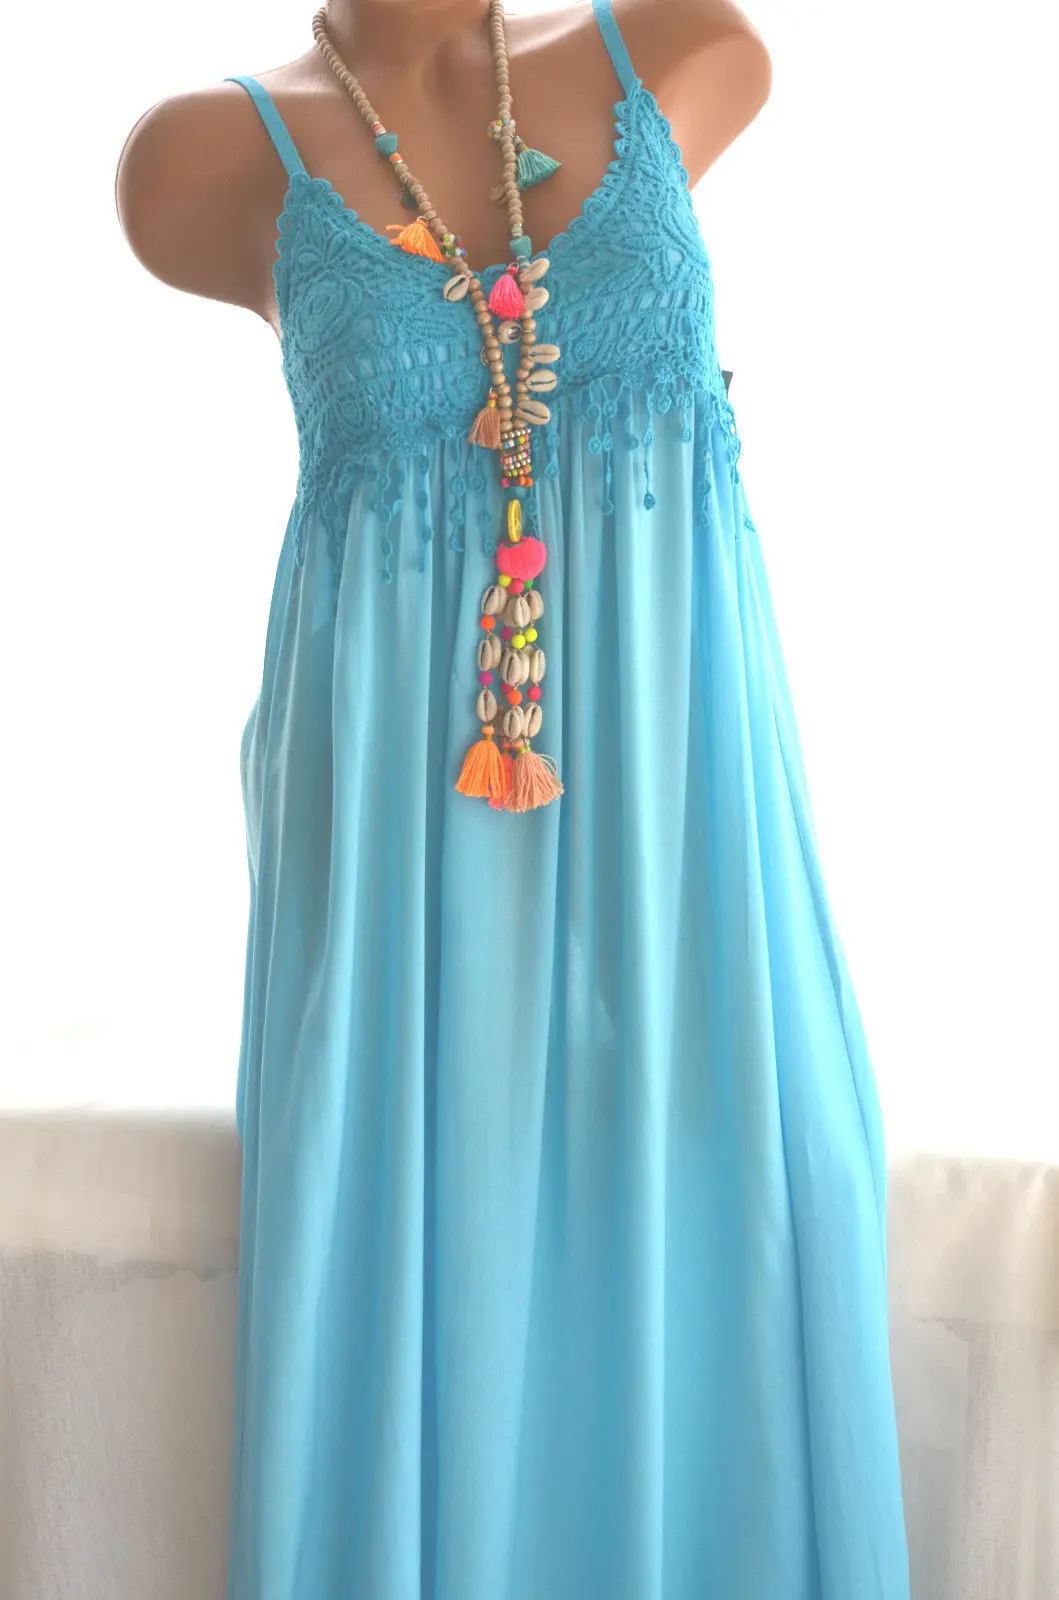 Женское платье на подтяжках большого размера летнее Новое Кружевное шифоновое платье 5XL - Цвет: see chart